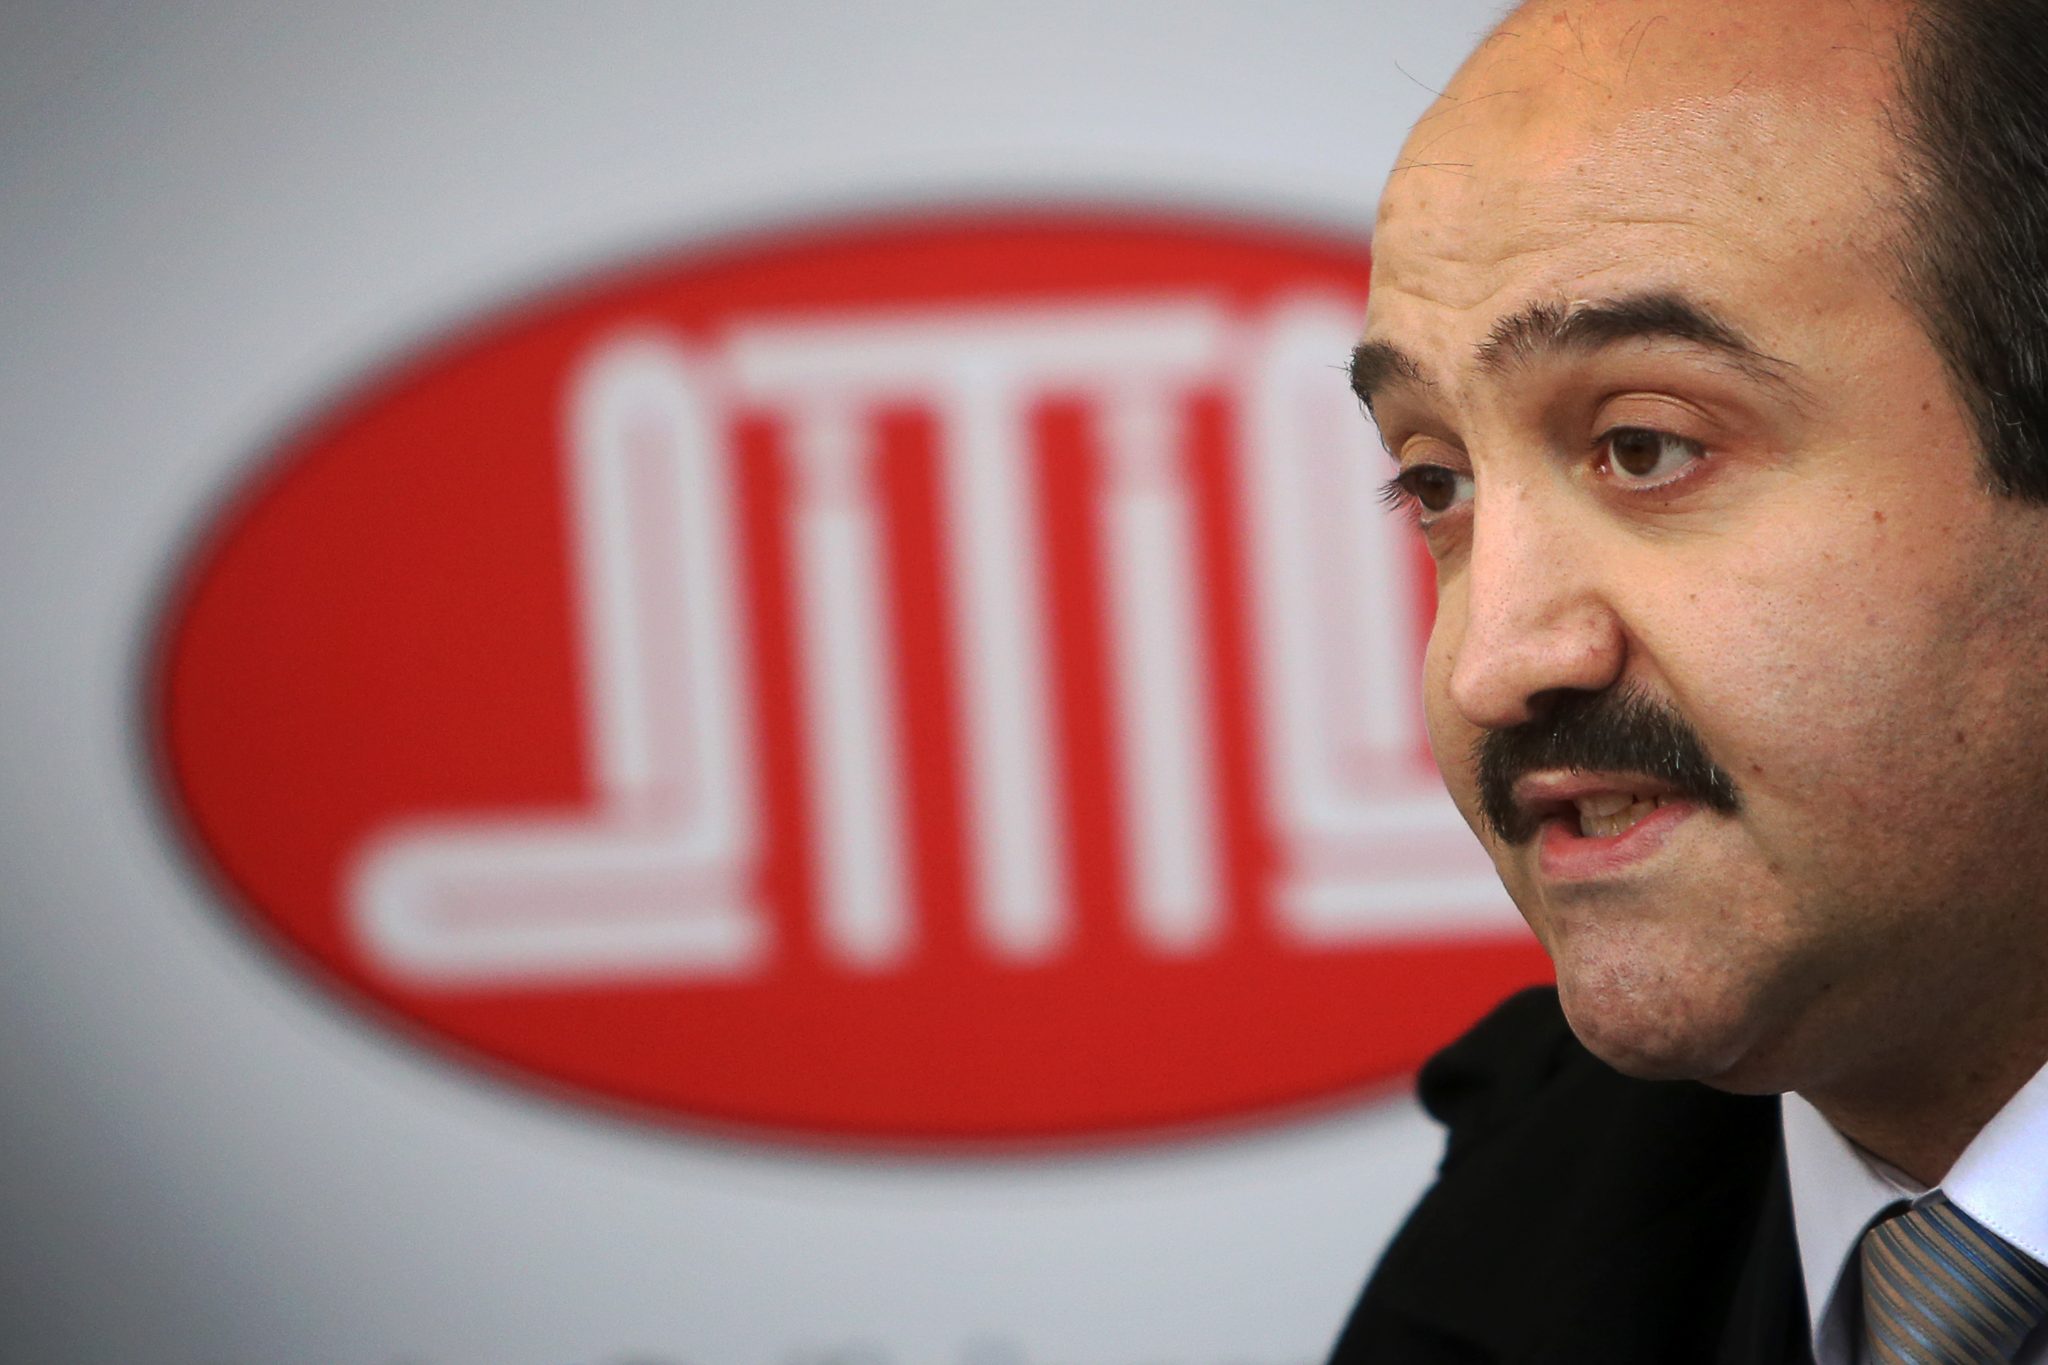 Ditib-Landesvorsitzende in Rheinland-Pfalz, Yilmaz Yildiz, erntete Kritik für Einladung